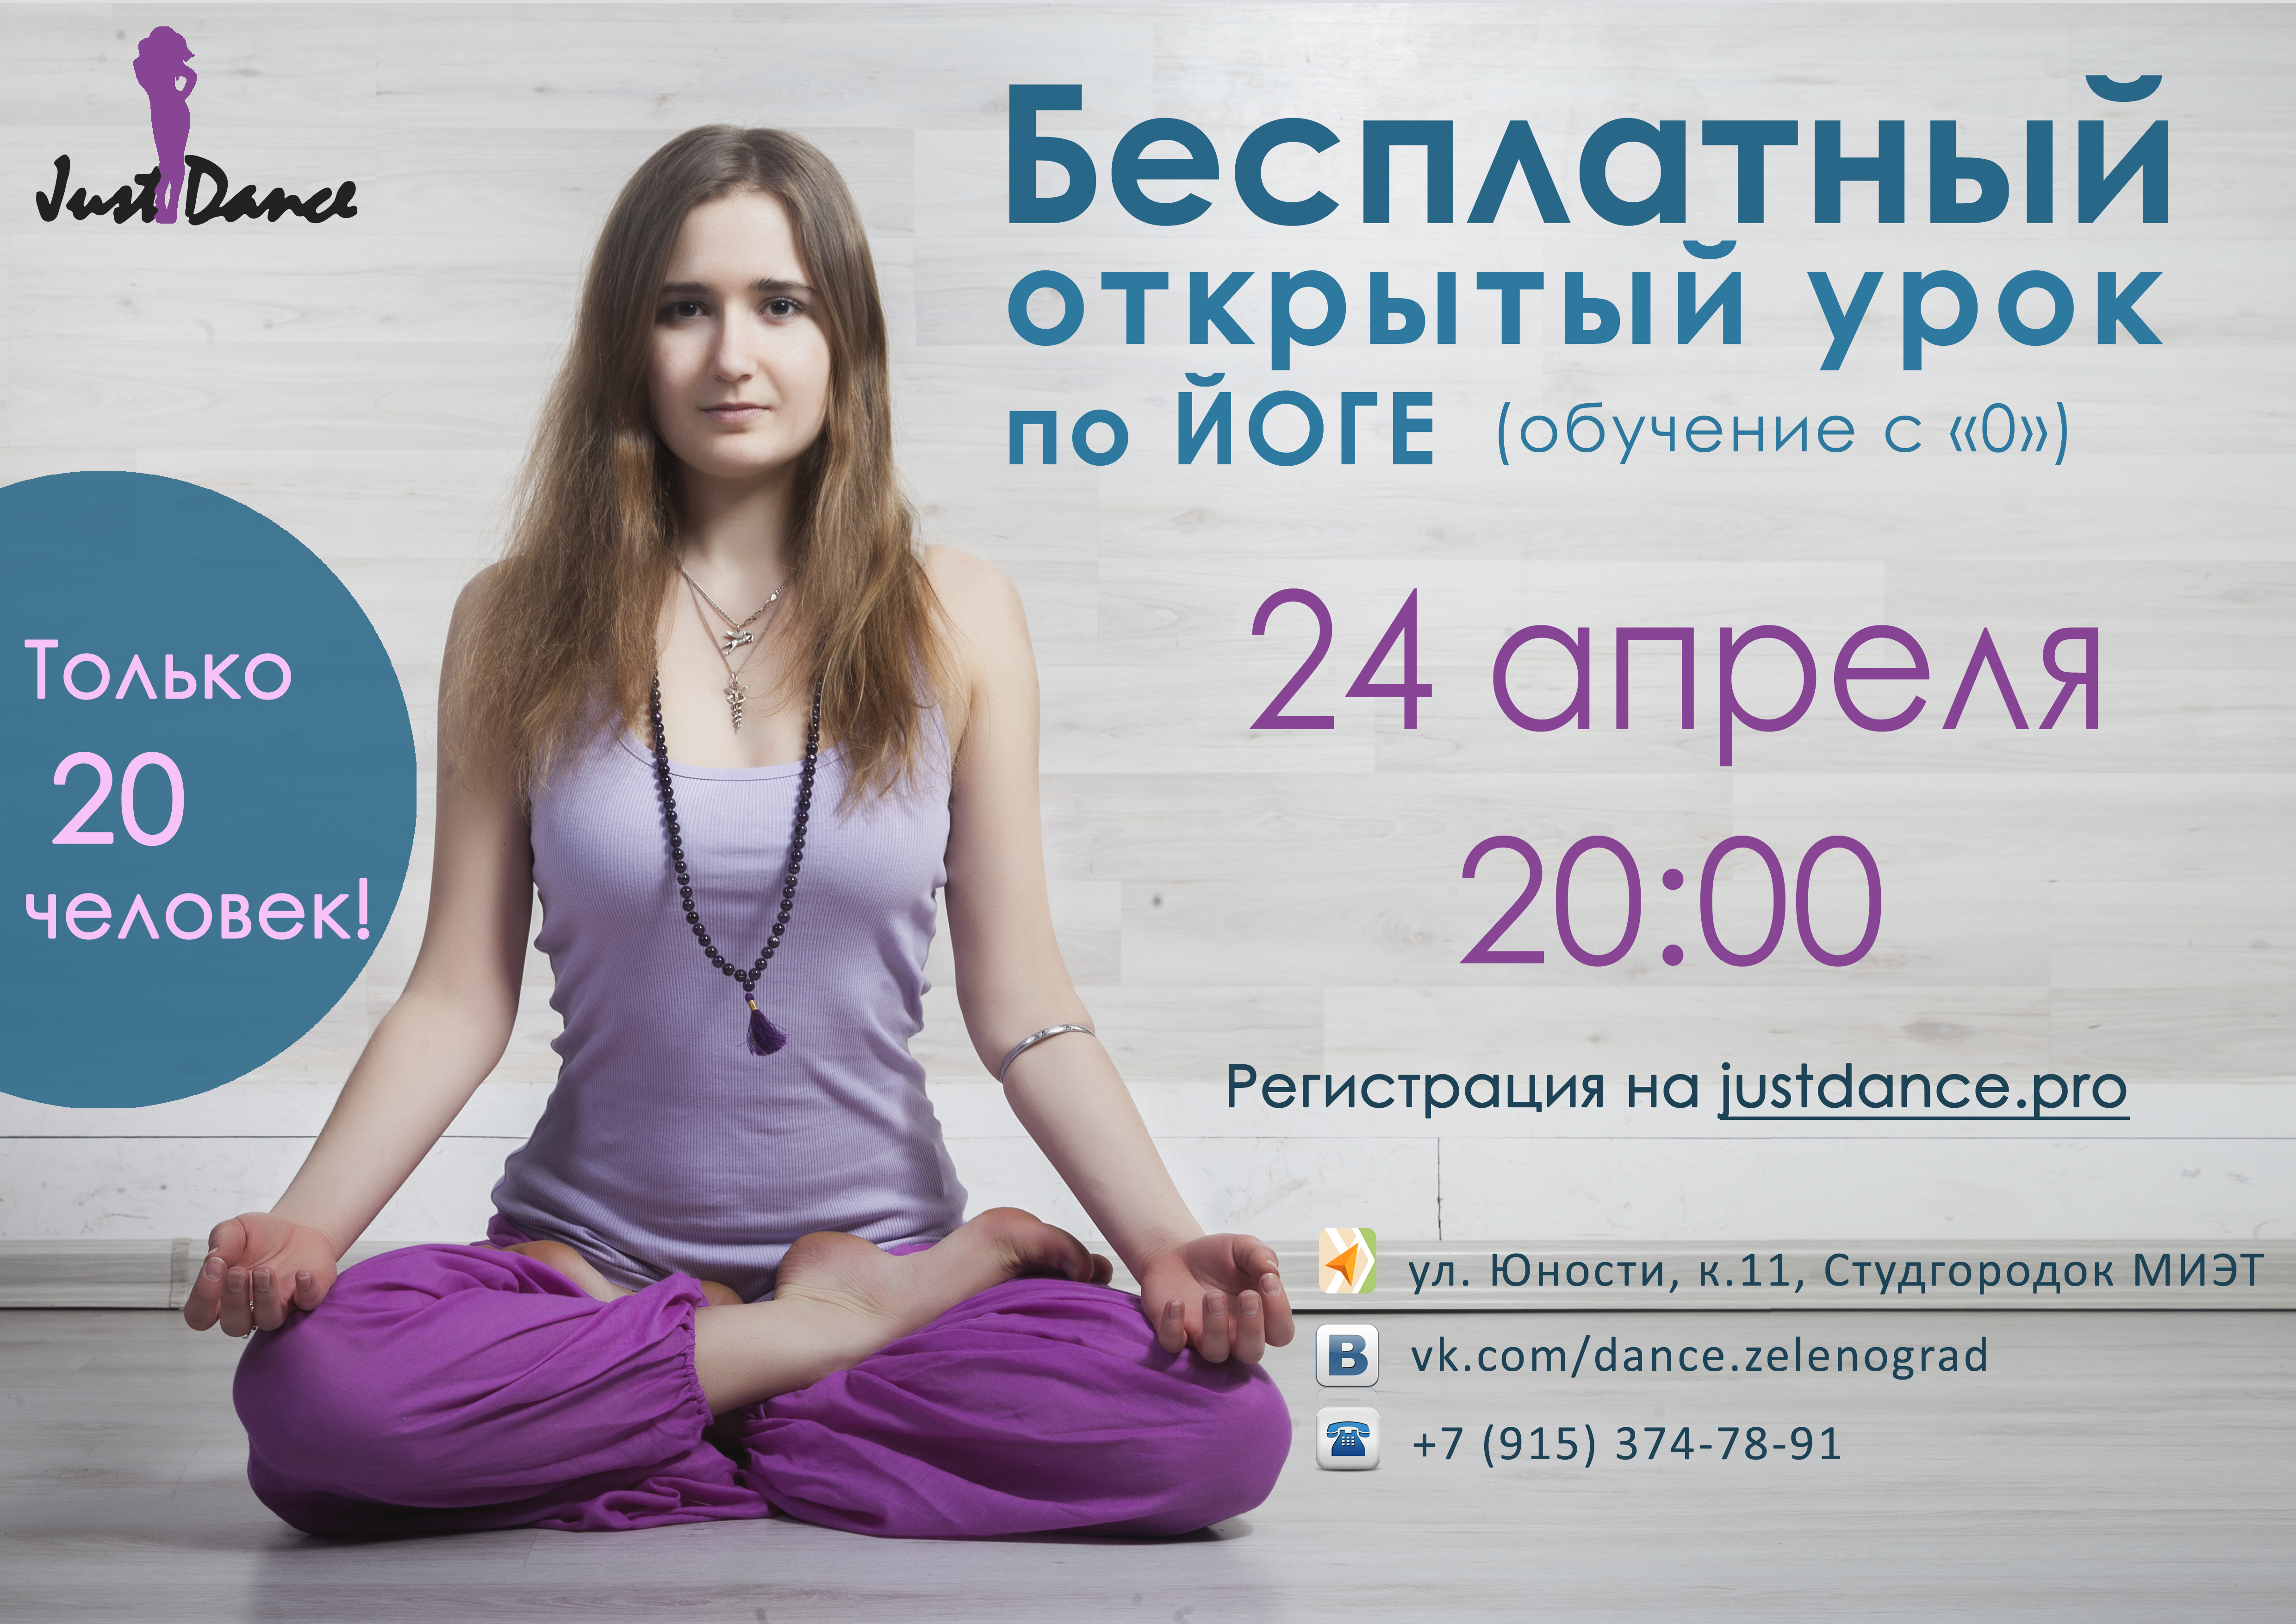 Российские бесплатные уроки. Приглашаем на занятия йогой. Приглашение на занятия йогой. Баннер йога студии. Реклама йога студии.